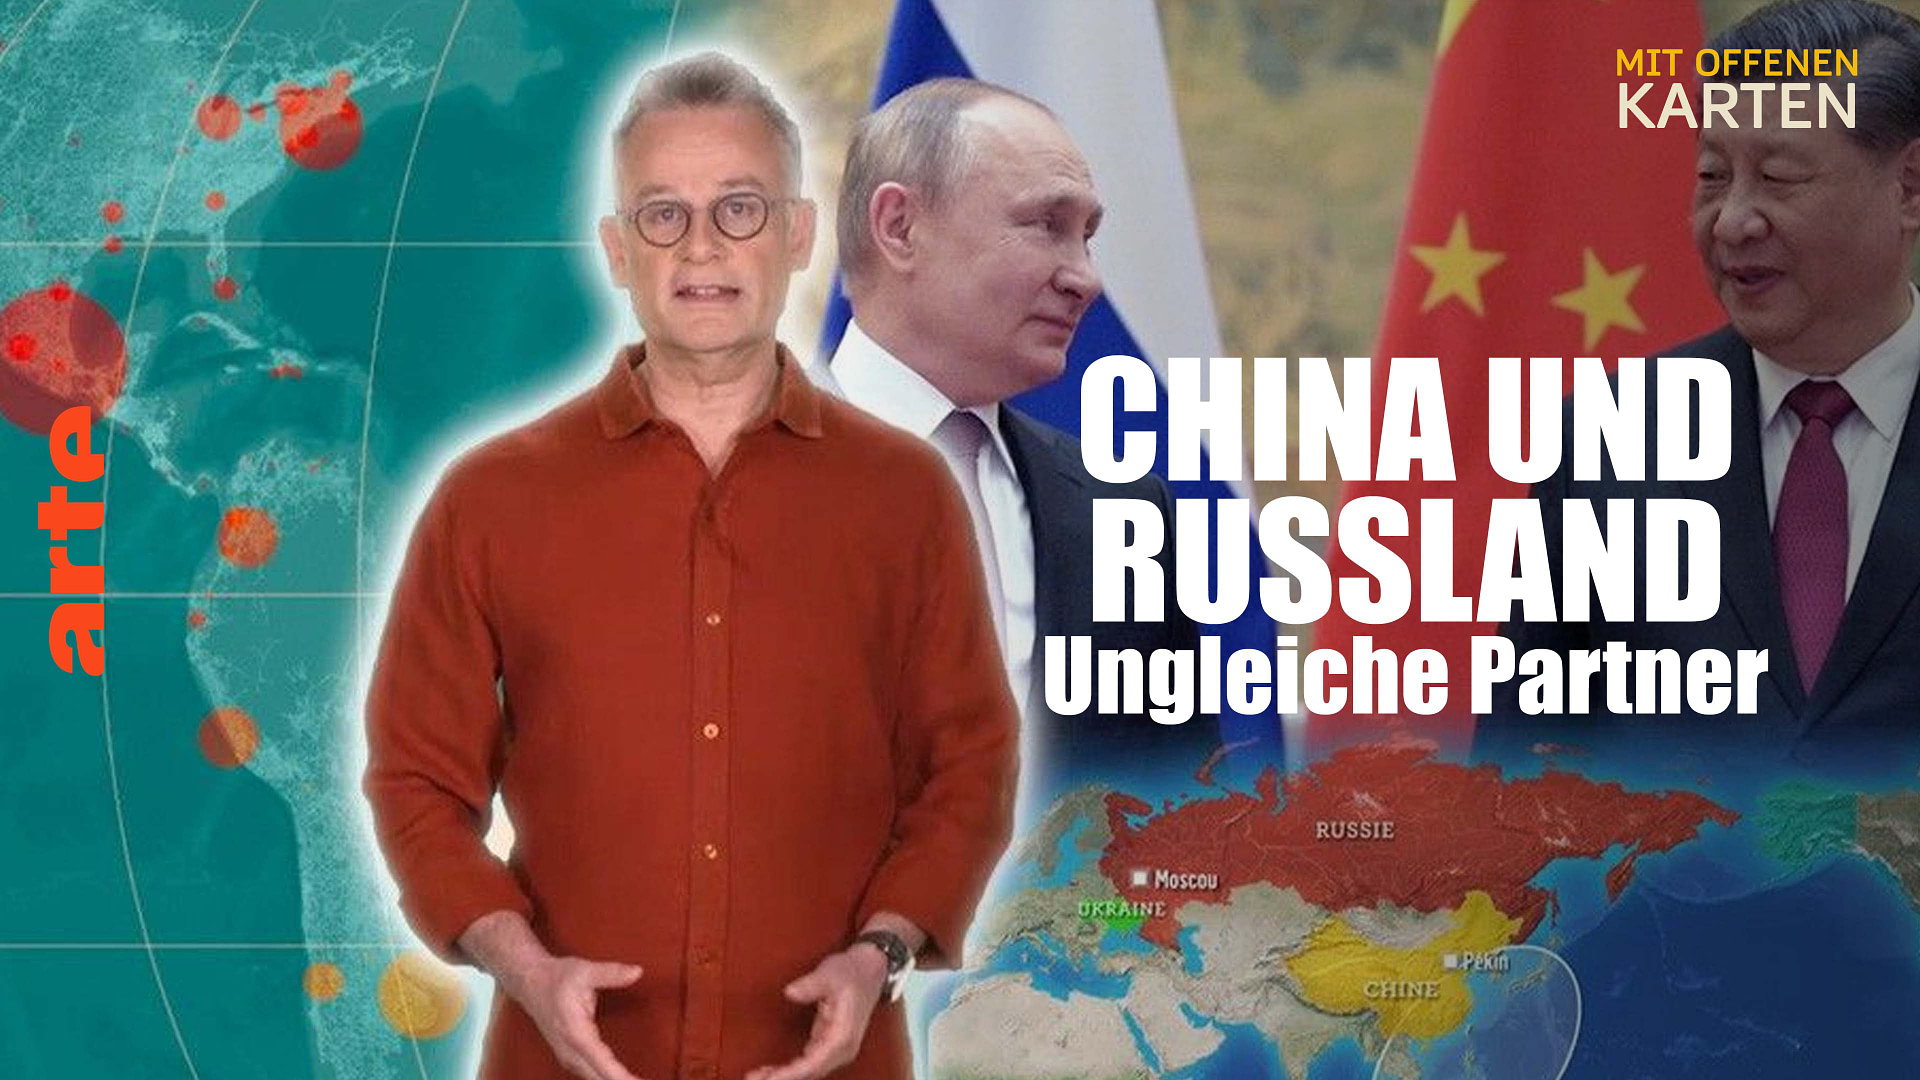 China und Russland, ungleiche Partner